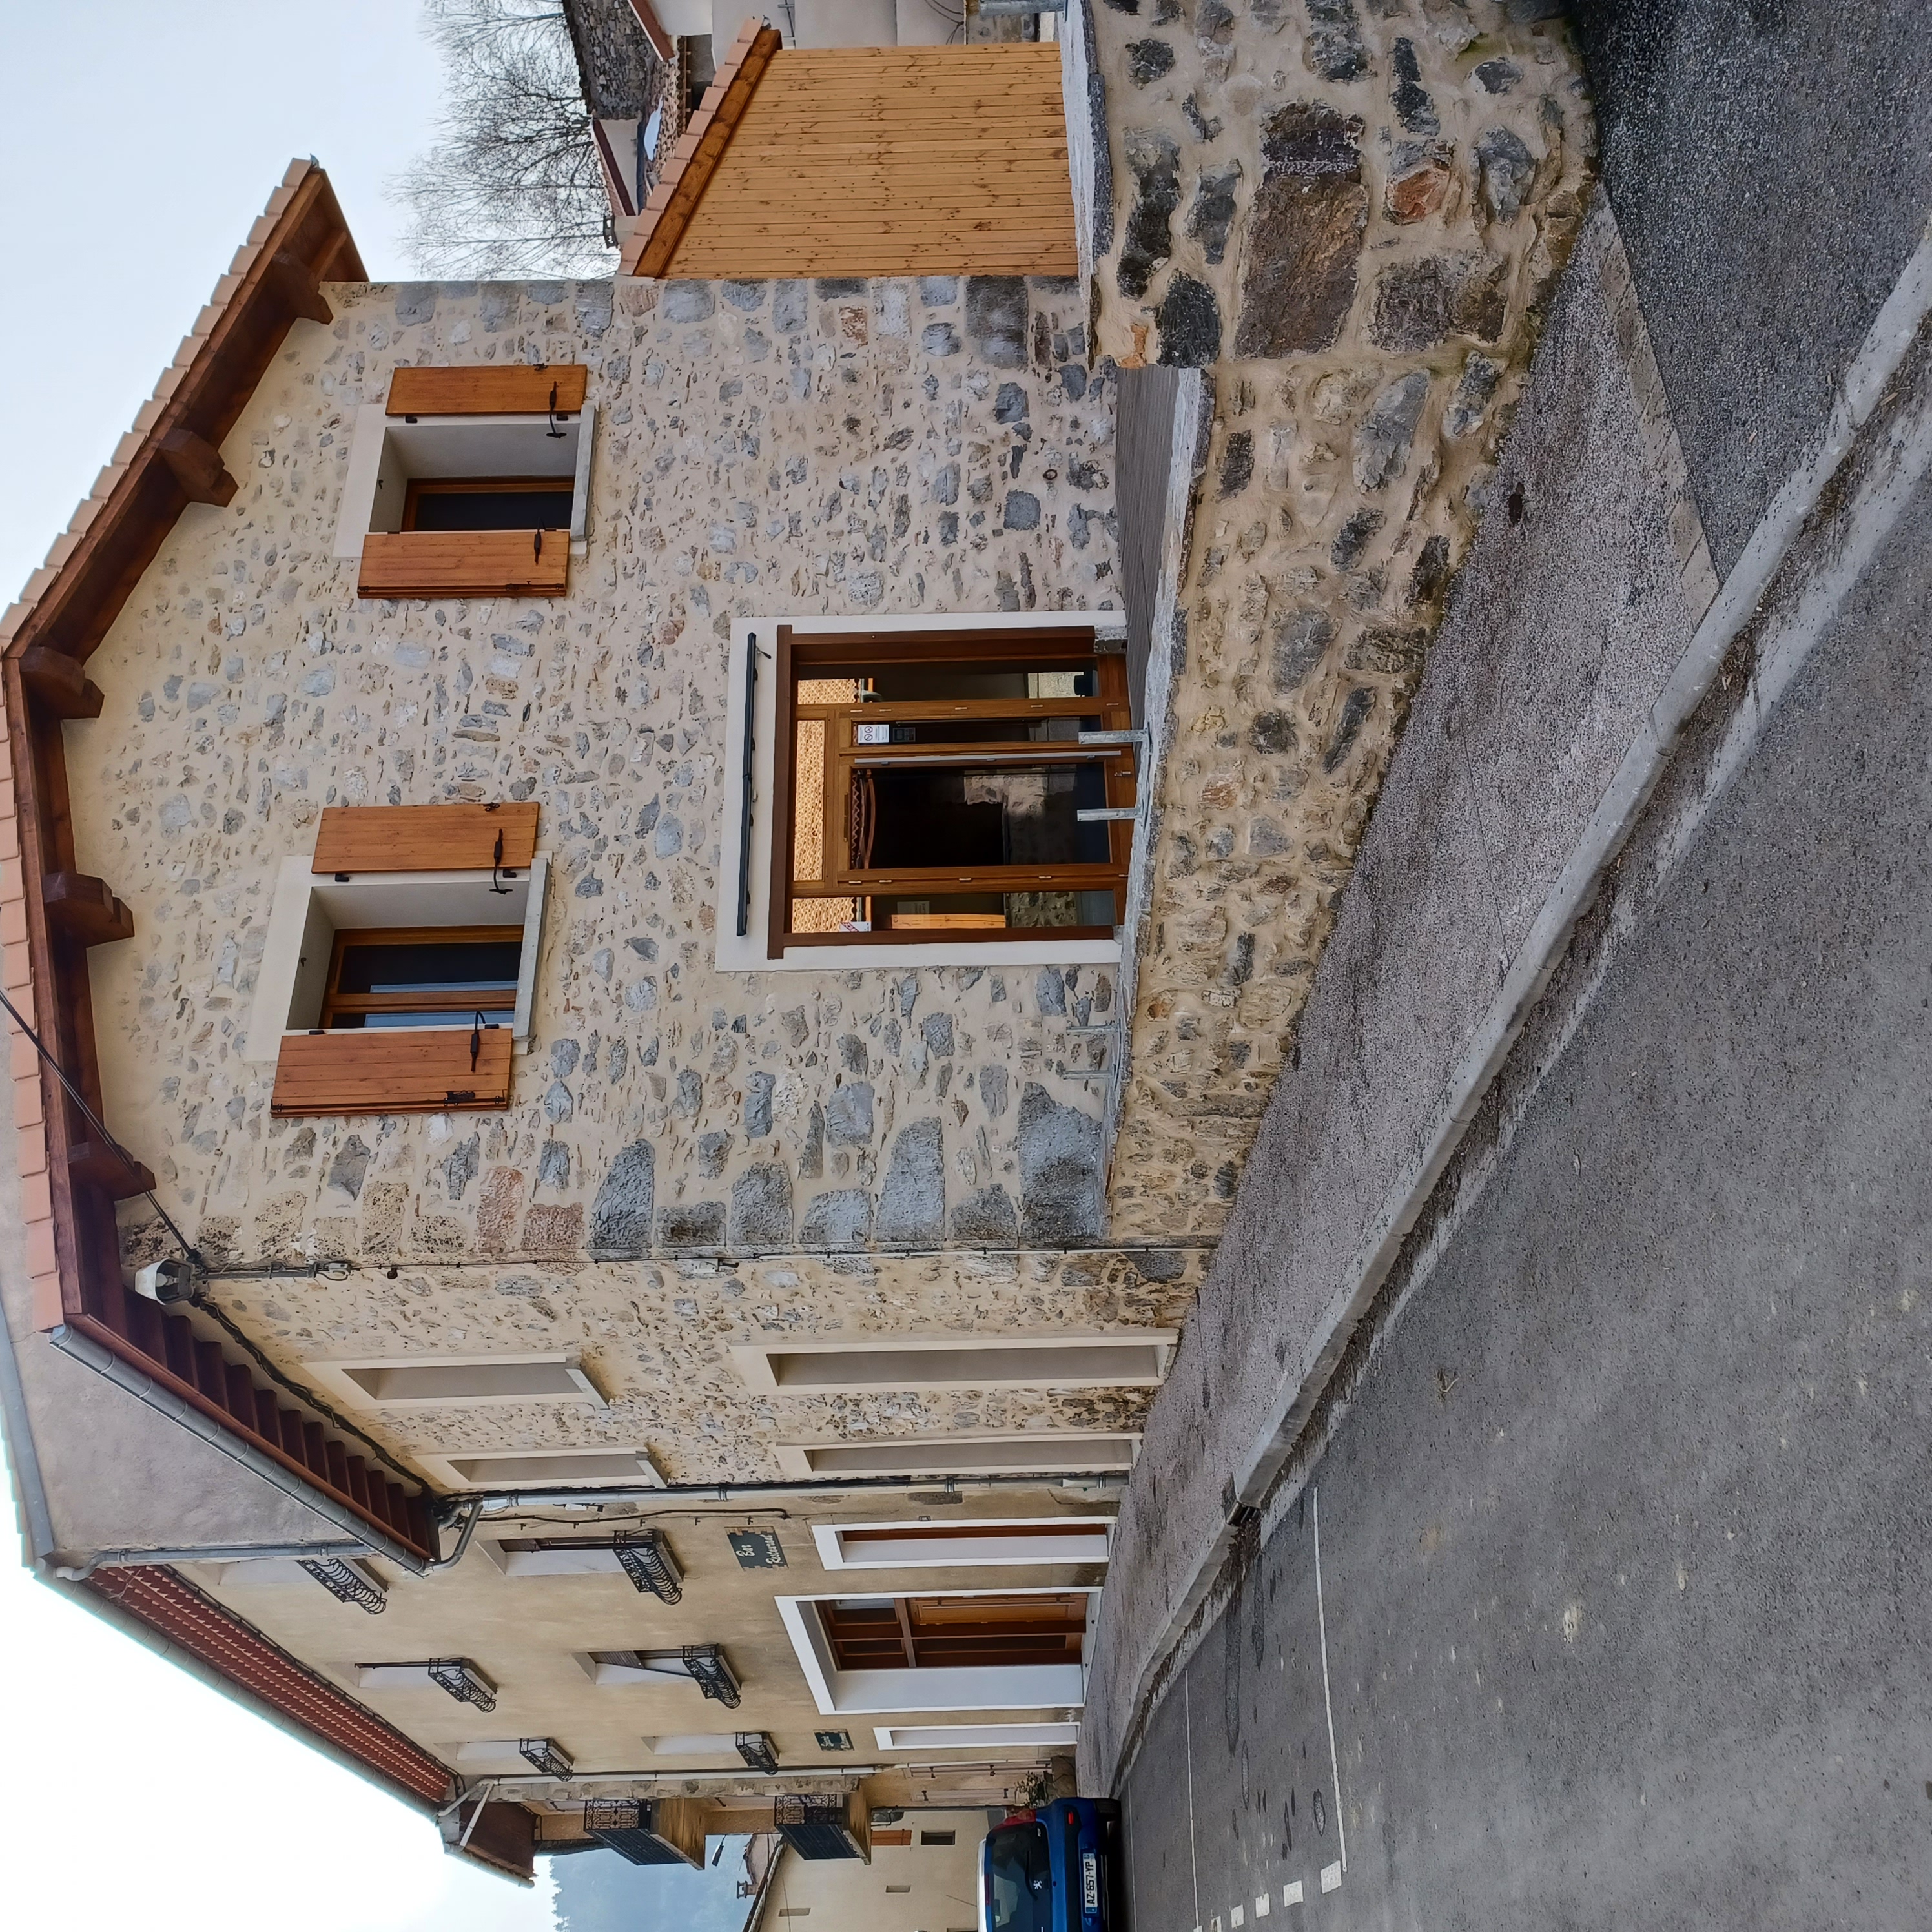 Café-Restaurant-Dépôt de pain-Services à louer à ROQUEFEUIL (300 habitants) dans l’Aude. Situé à l’ouest du département dans le piémont Pyrénéen à 30 km d’Ax les Thermes, 27 km de Quillan, 20 km de Lavelanet, 70 km de Carcassonne et 48 km de Foix.
Roquefeuil (altitude moyenne 1000 m) est un environnement agricole et d’élevage sur un plateau très touristique (randonnée, parapente, cyclisme sur route, cyclotourisme, château cathare, ski, etc.).
Cet établissement avait été tenu par un couple qui a arrêté au bout de 7 mois d’exploitation pour raison personnelle. Établissement entièrement équipé et neuf appartenant à la municipalité. Possibilité d’exploiter également des gites au R+1 et R+2 dans le même bâtiment. Licence IV (unique de la commune), matériels, et murs appartenant à la commune.
La Commune recherche un preneur pour une concession afin de proposer et développer des services (dépôt de pains, journaux, relais colis, animations, etc.), le bar et une restauration à une clientèle locale, professionnelle, et touristique (camping 3 étoiles dans la commune). 
Surface totale : 
Salle de bar : 45 m²
Salle restaurant : 74 m²
Réserve : 21 m²
Cuisine équipée et sa réserve : 20 m²
Locaux sociaux : 6  m²
Toilettes handicap : 2.2 m²
Terrasse bois extérieure : 42m²

Possibilité de logement au dessus de l’établissement : 
R1 : 130 m², R1 : 50 m², R2 : 130 m²
Prévoir un budget minimum pour la trésorerie et le besoin de fond de roulement. 
Des aides sont mobilisables au niveau de la commune et du département.

Les candidats seront sélectionnés sur présentation d’un dossier de candidature puis auditionné devant un jury.
Le dossier doit être retiré sur demande (par téléphone ou  mail).
Le dossier doit être adressé par courrier à la Commune : 75 Grand Rue 11340 Roquefeuil 
ou par mail à mairie.roquefeuil@orange.fr  .
Contact : 06.85.93.11.05